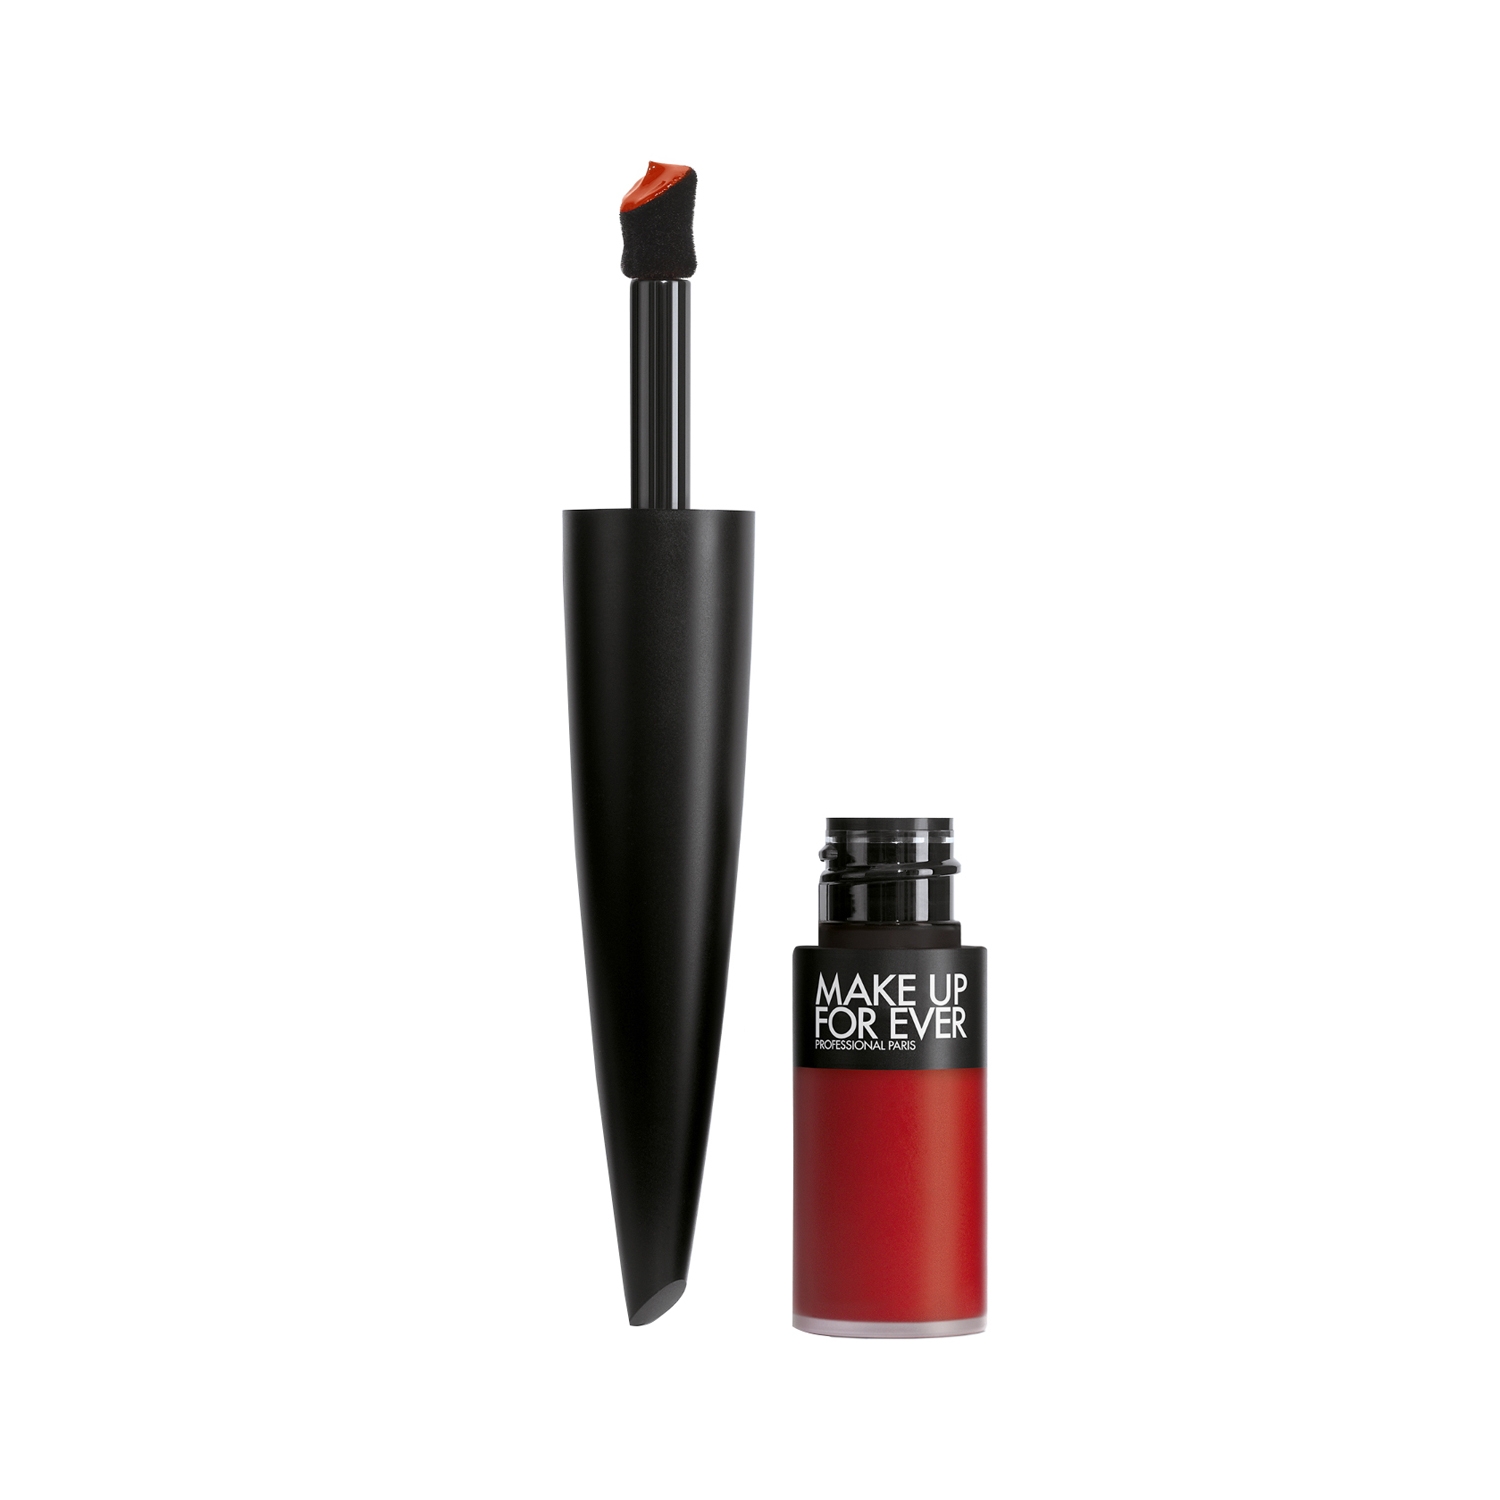 Make Up For Ever | Make Up For Ever Rouge Artist for Ever Matte Liquid Lipstick-everlasting Scarlet 442 (4.5ml)